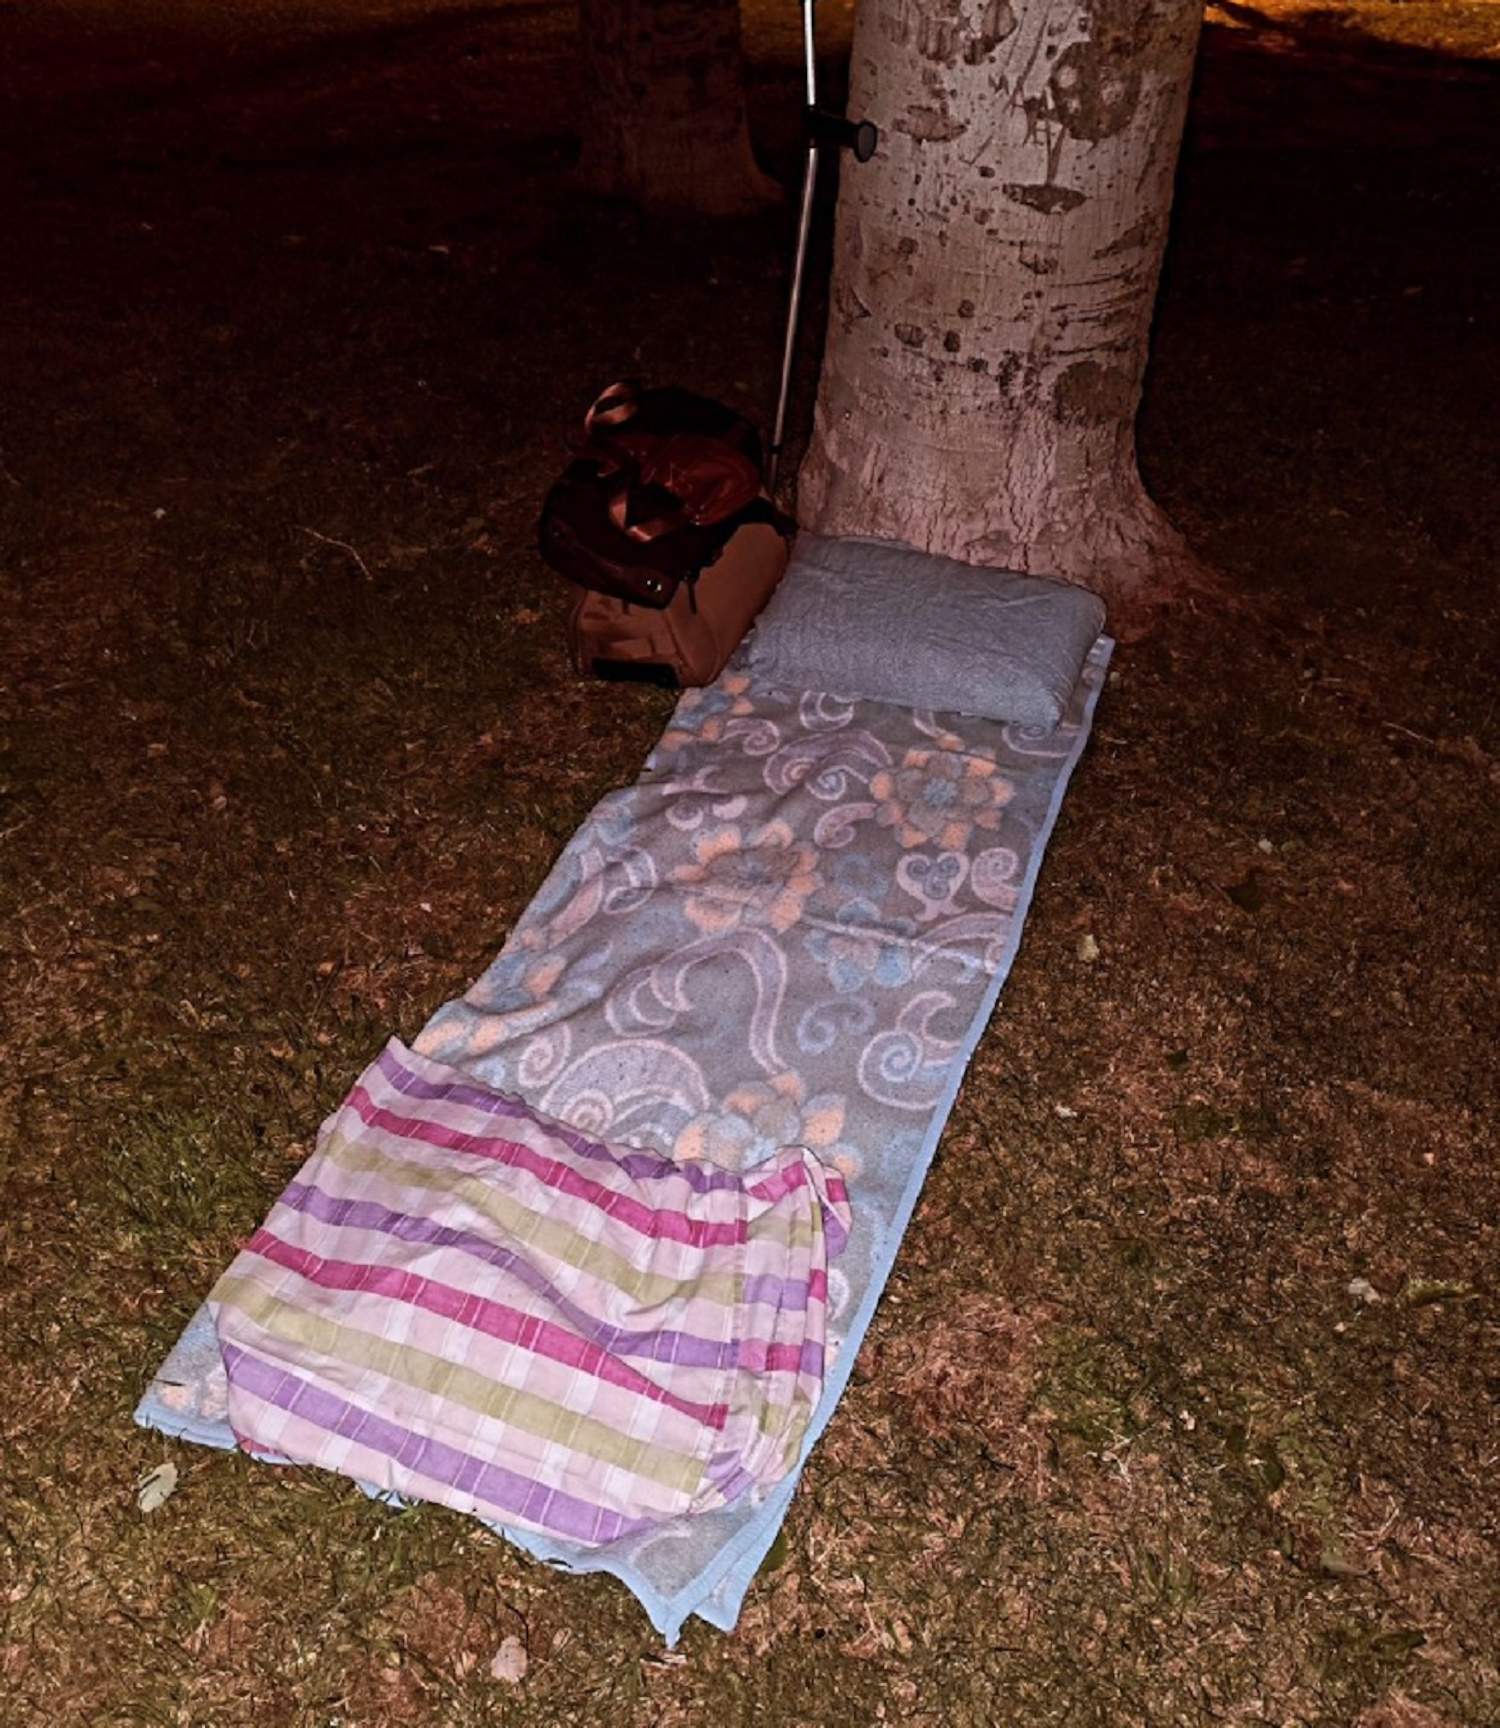 Drama de famoso cantante catalán, operado y durmiendo en la calle, junto a un árbol: "Jodido. Saldré adelante"